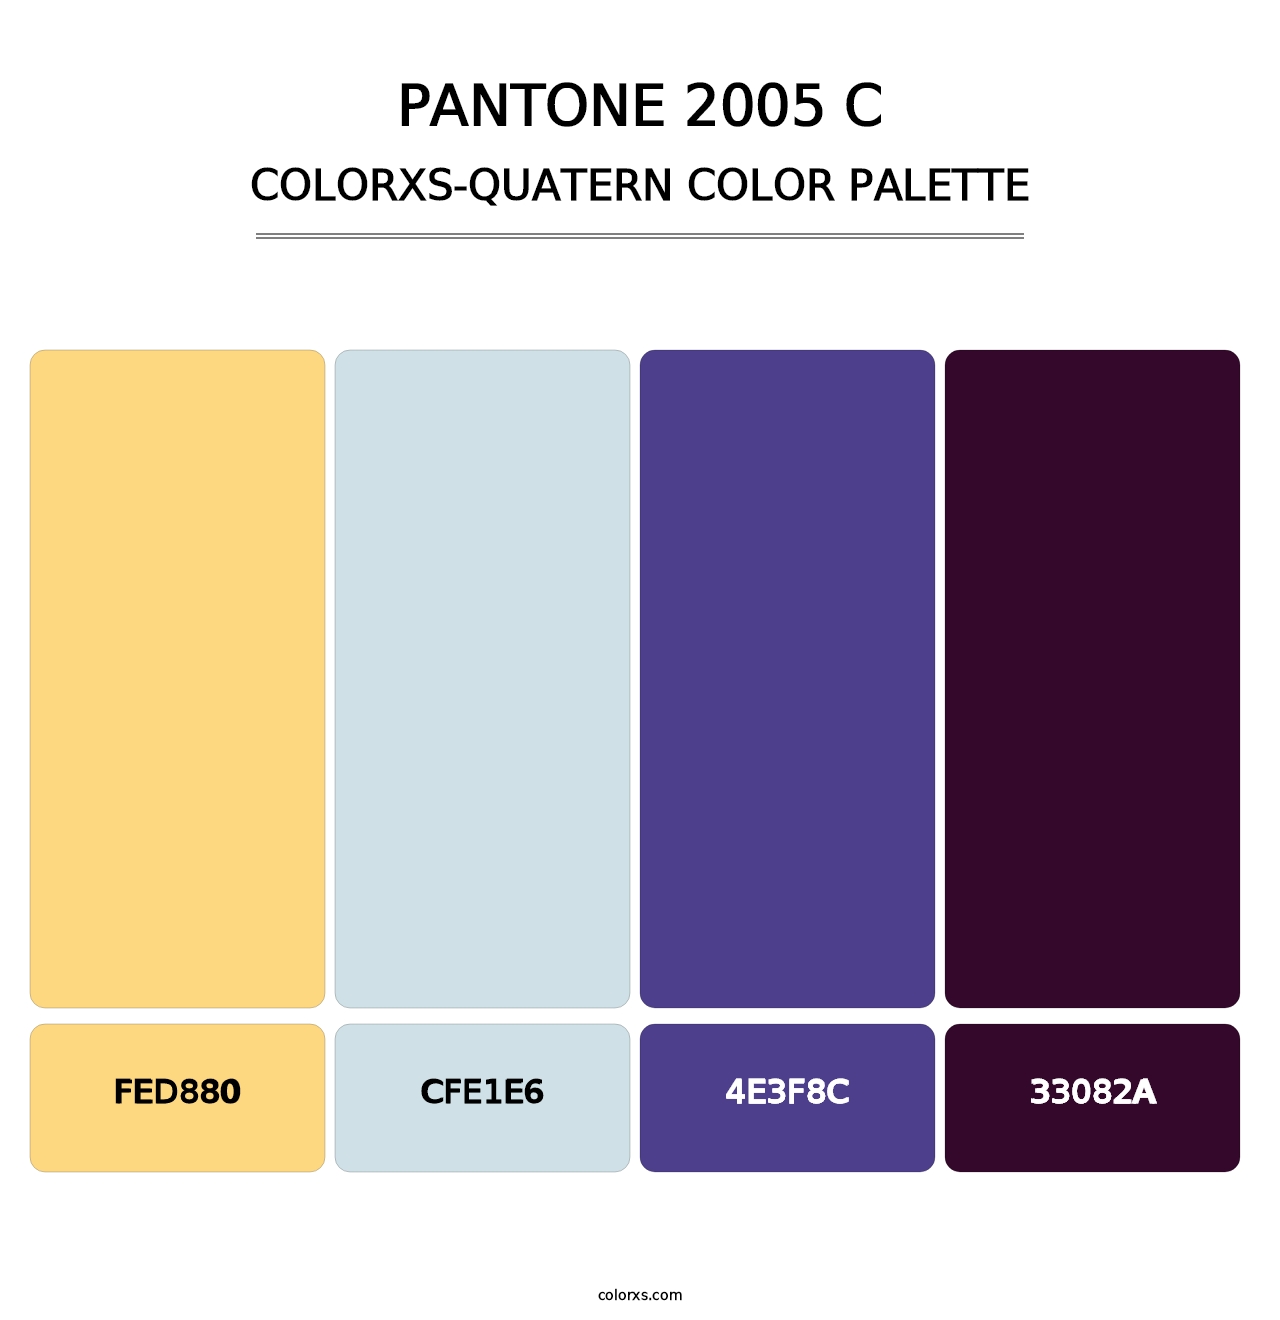 PANTONE 2005 C - Colorxs Quatern Palette